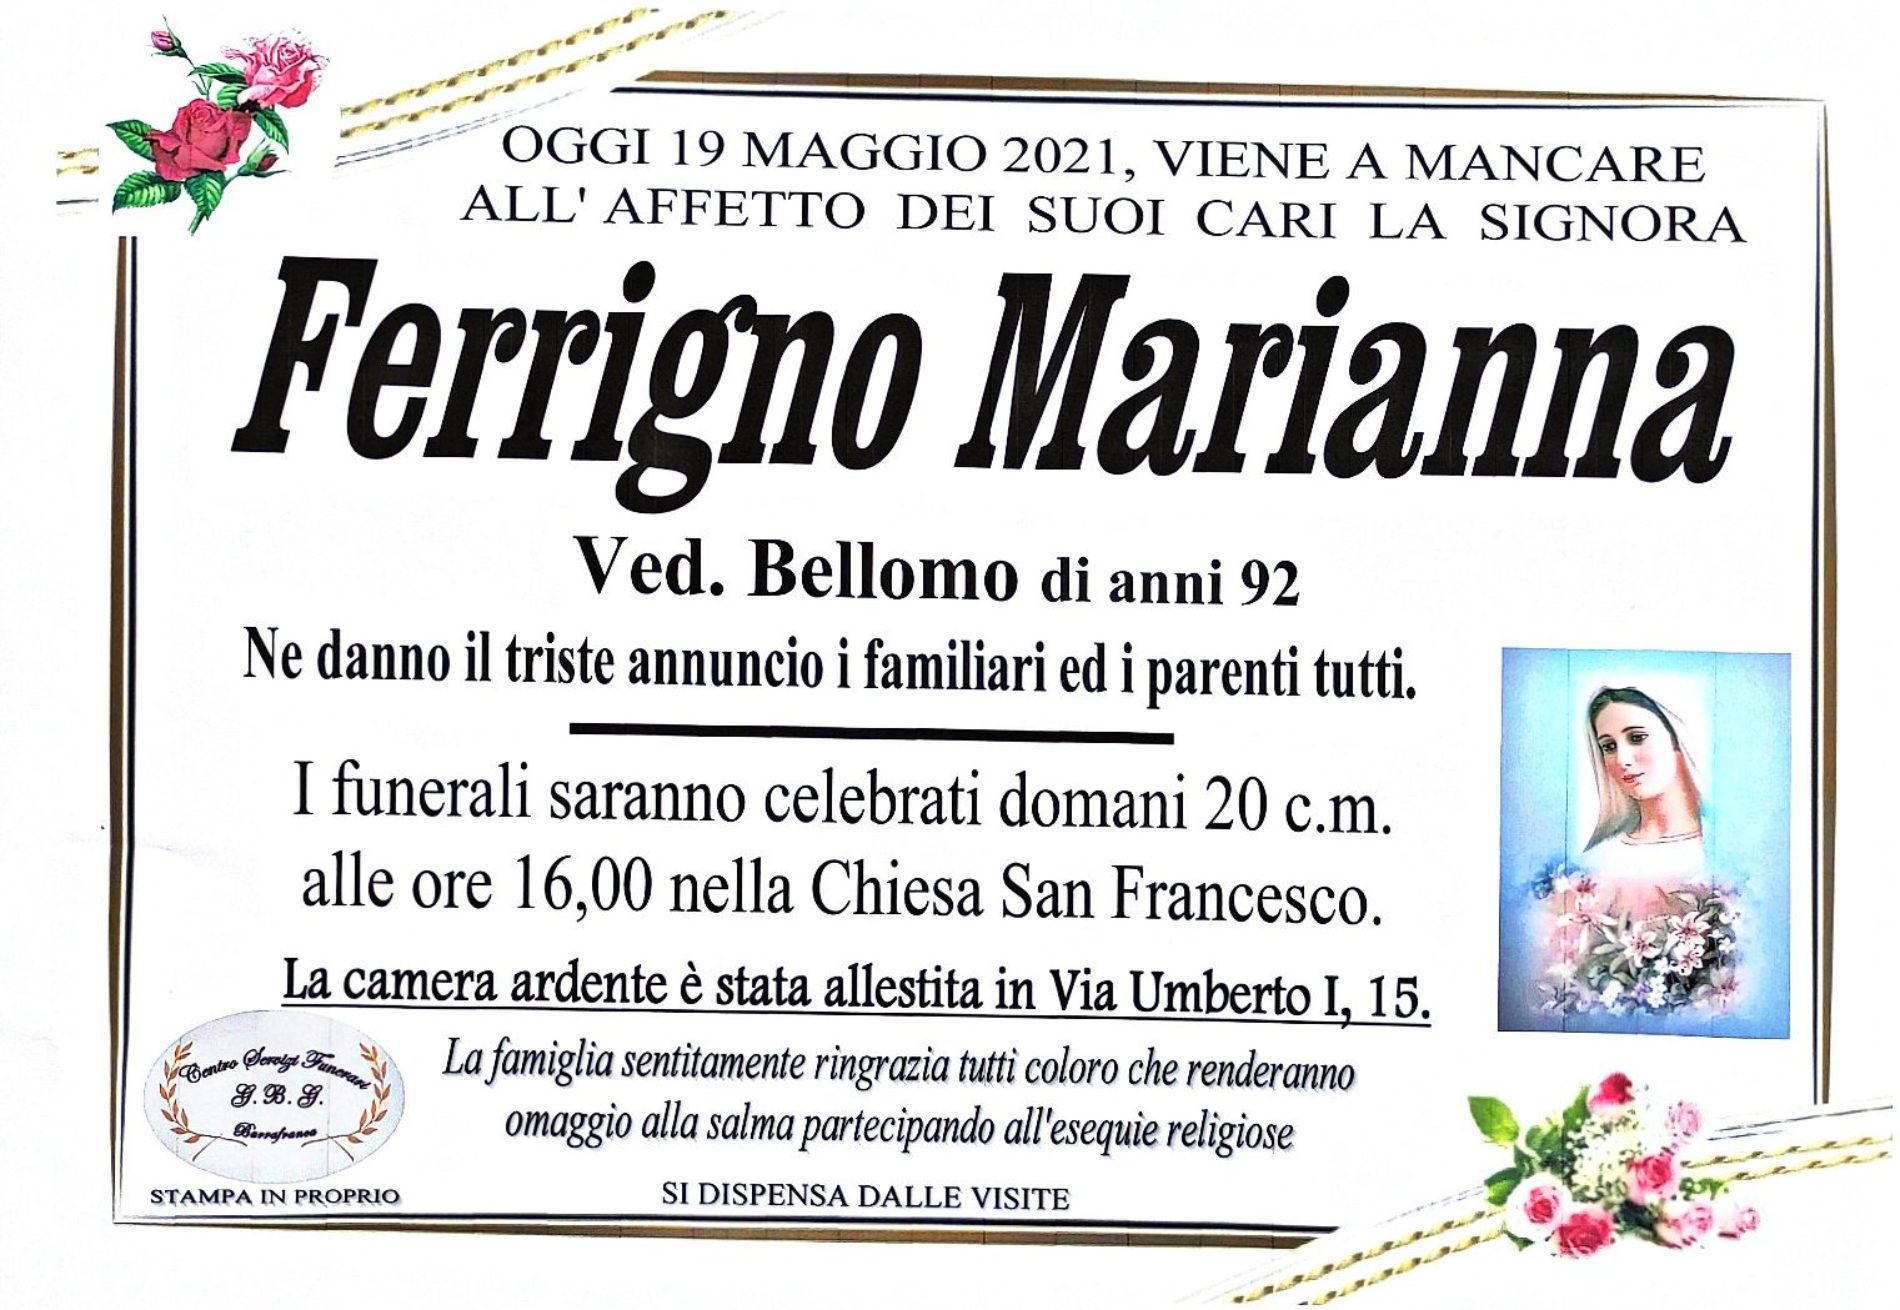 Annuncio servizi funerari agenzia G.B.G. sig.ra Ferrigno Marianna ved. Bellomo di anni 92